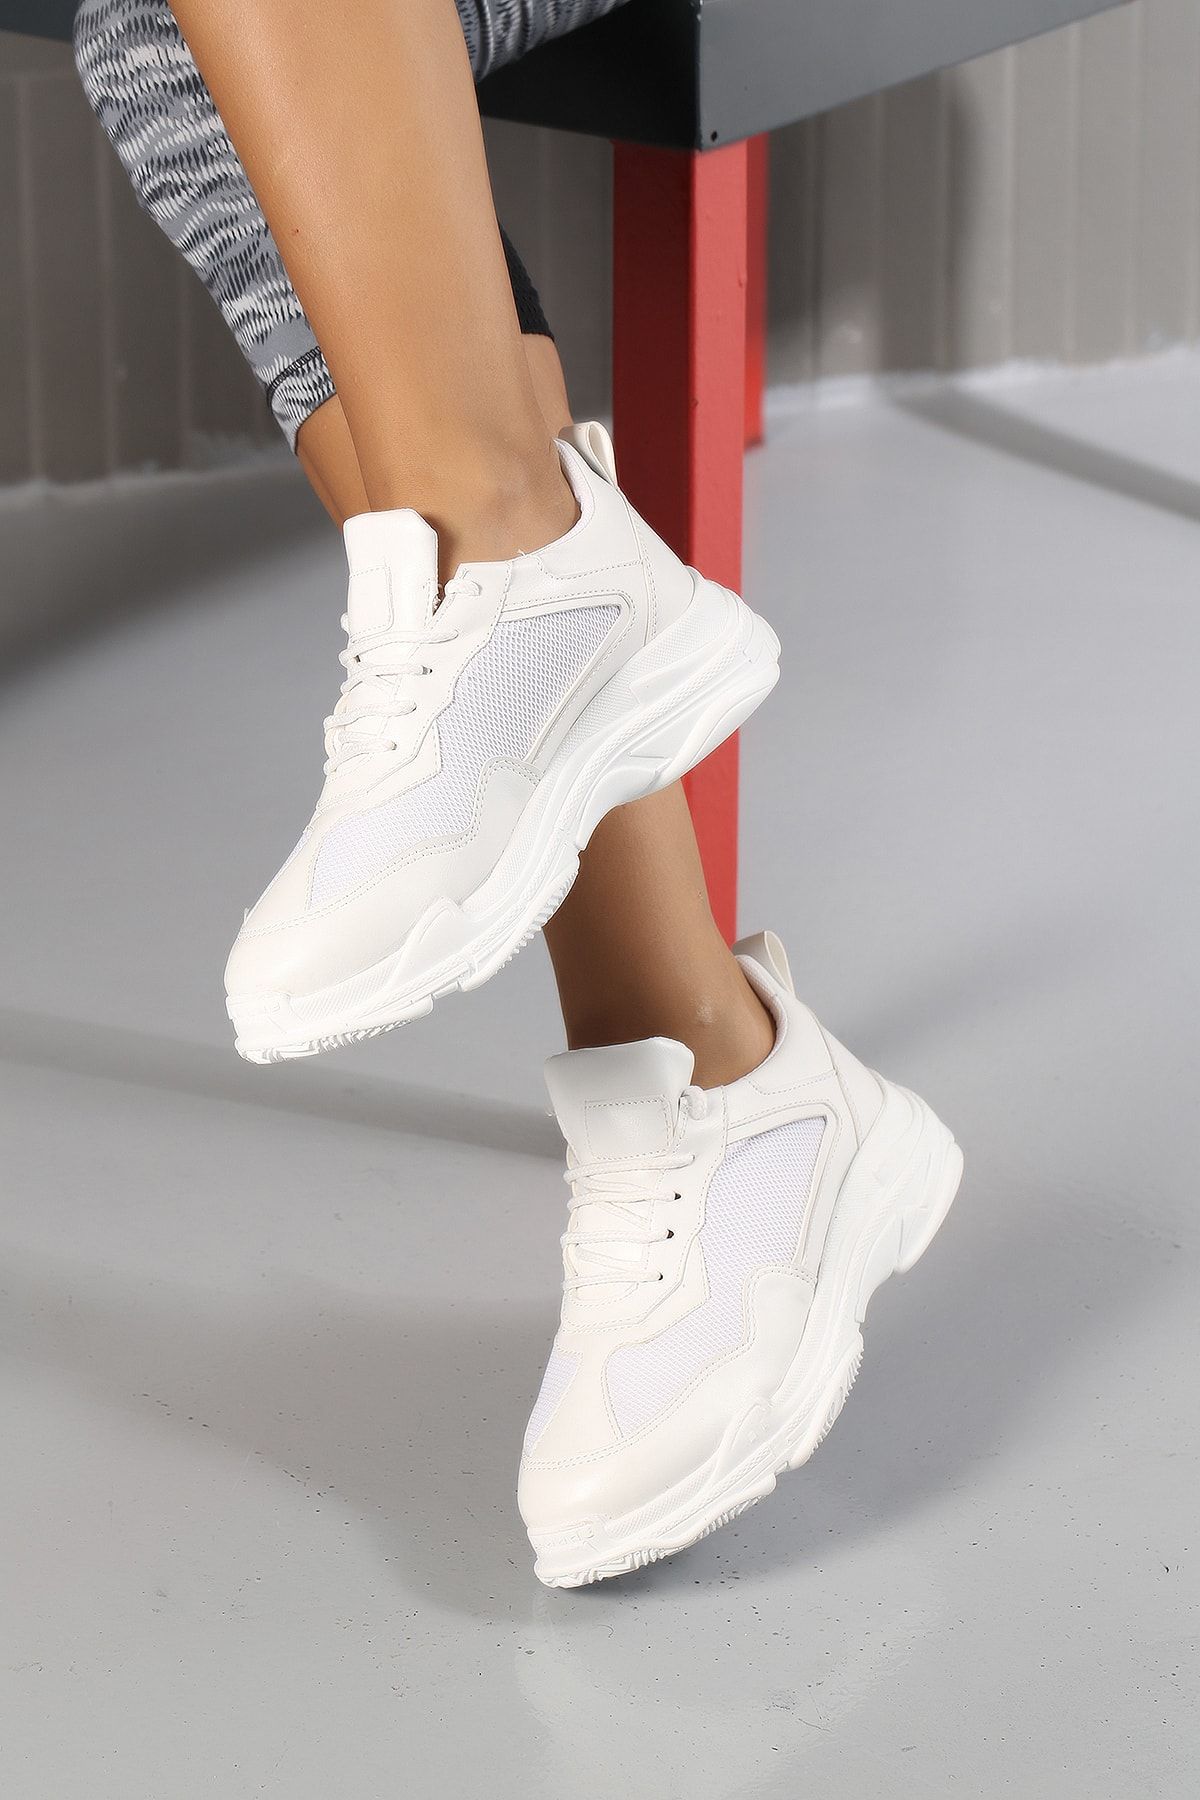 Du Jour Paris Beyaz Kadın Spor Ayakkabı 5002-19-101001